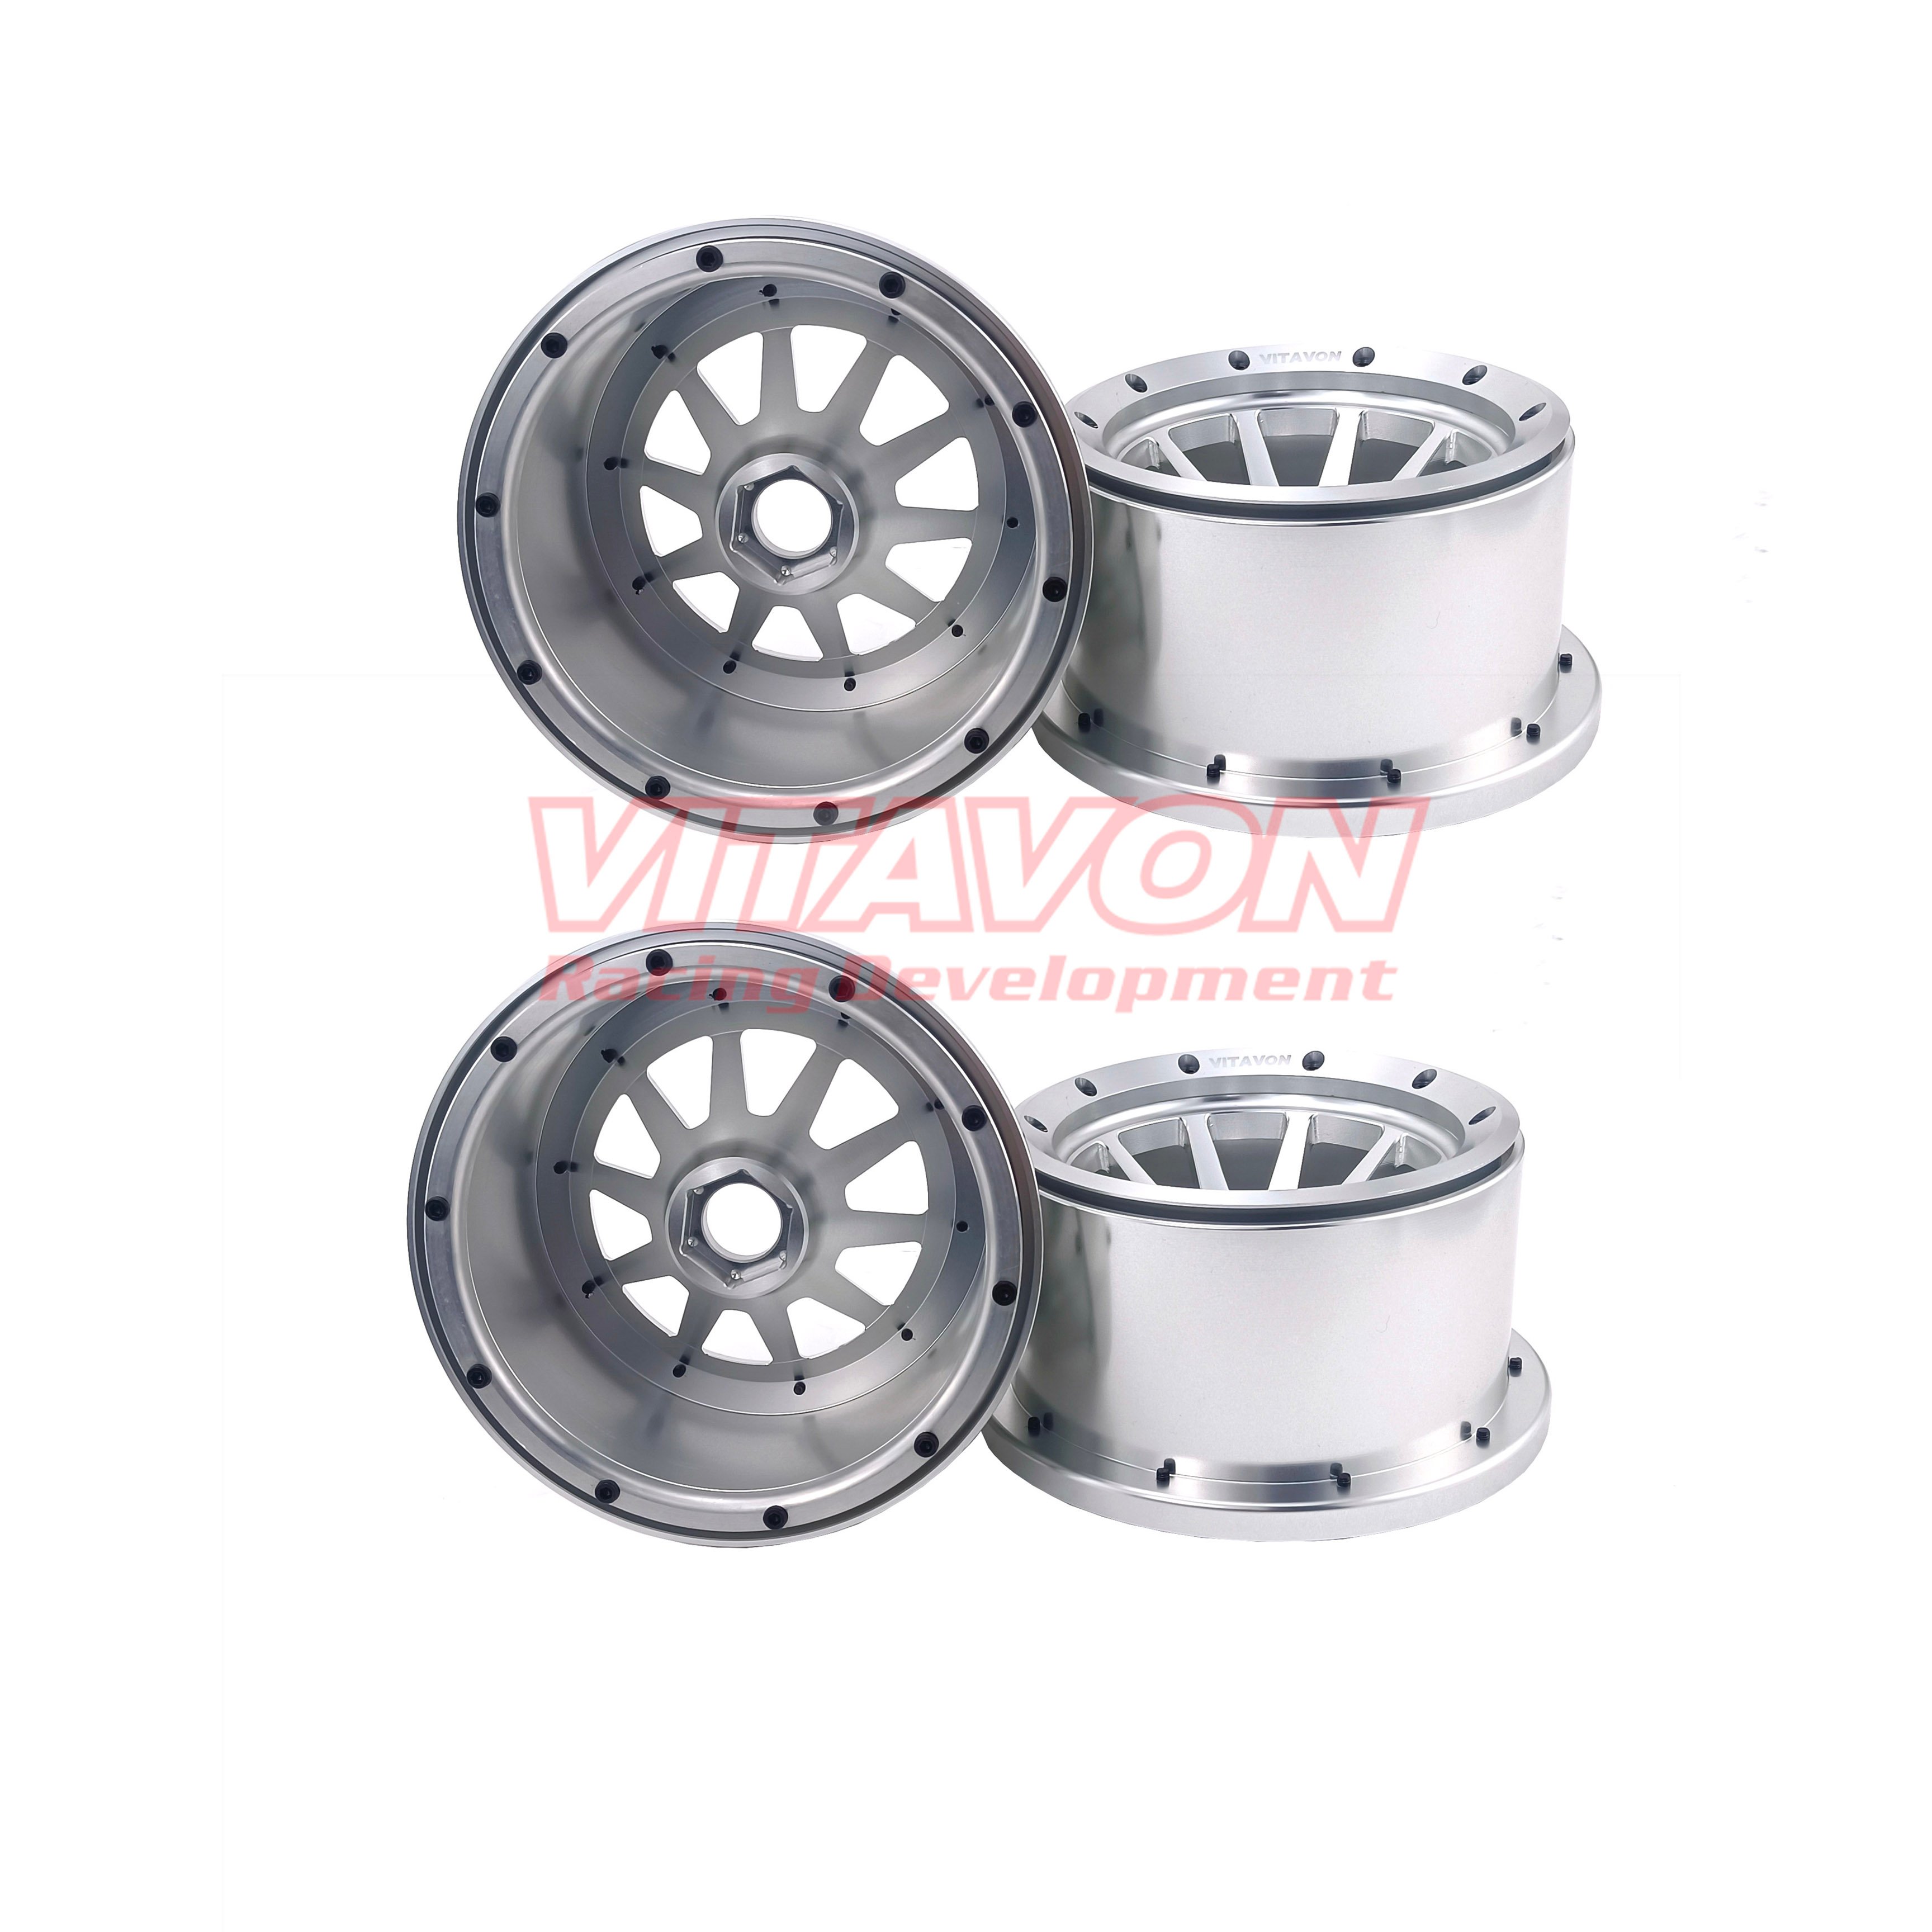 VITAVON CNC Aluminum 1/5 Bead Lock Wheel 70MM Wide For Vekta Losi Baja 5B,DBXL 1/5